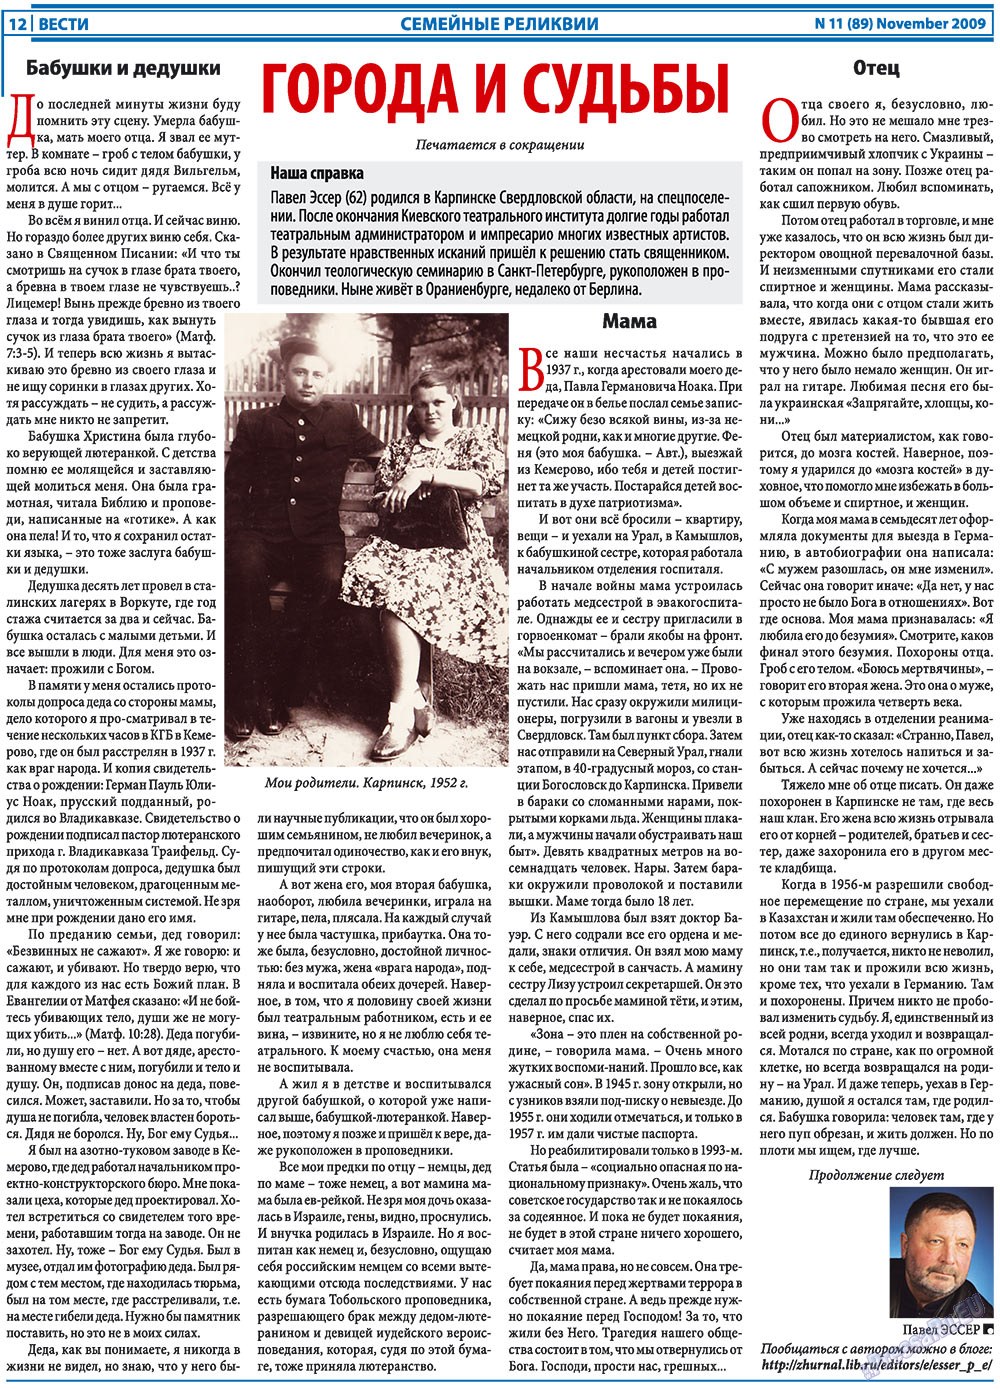 Вести, газета. 2009 №11 стр.12